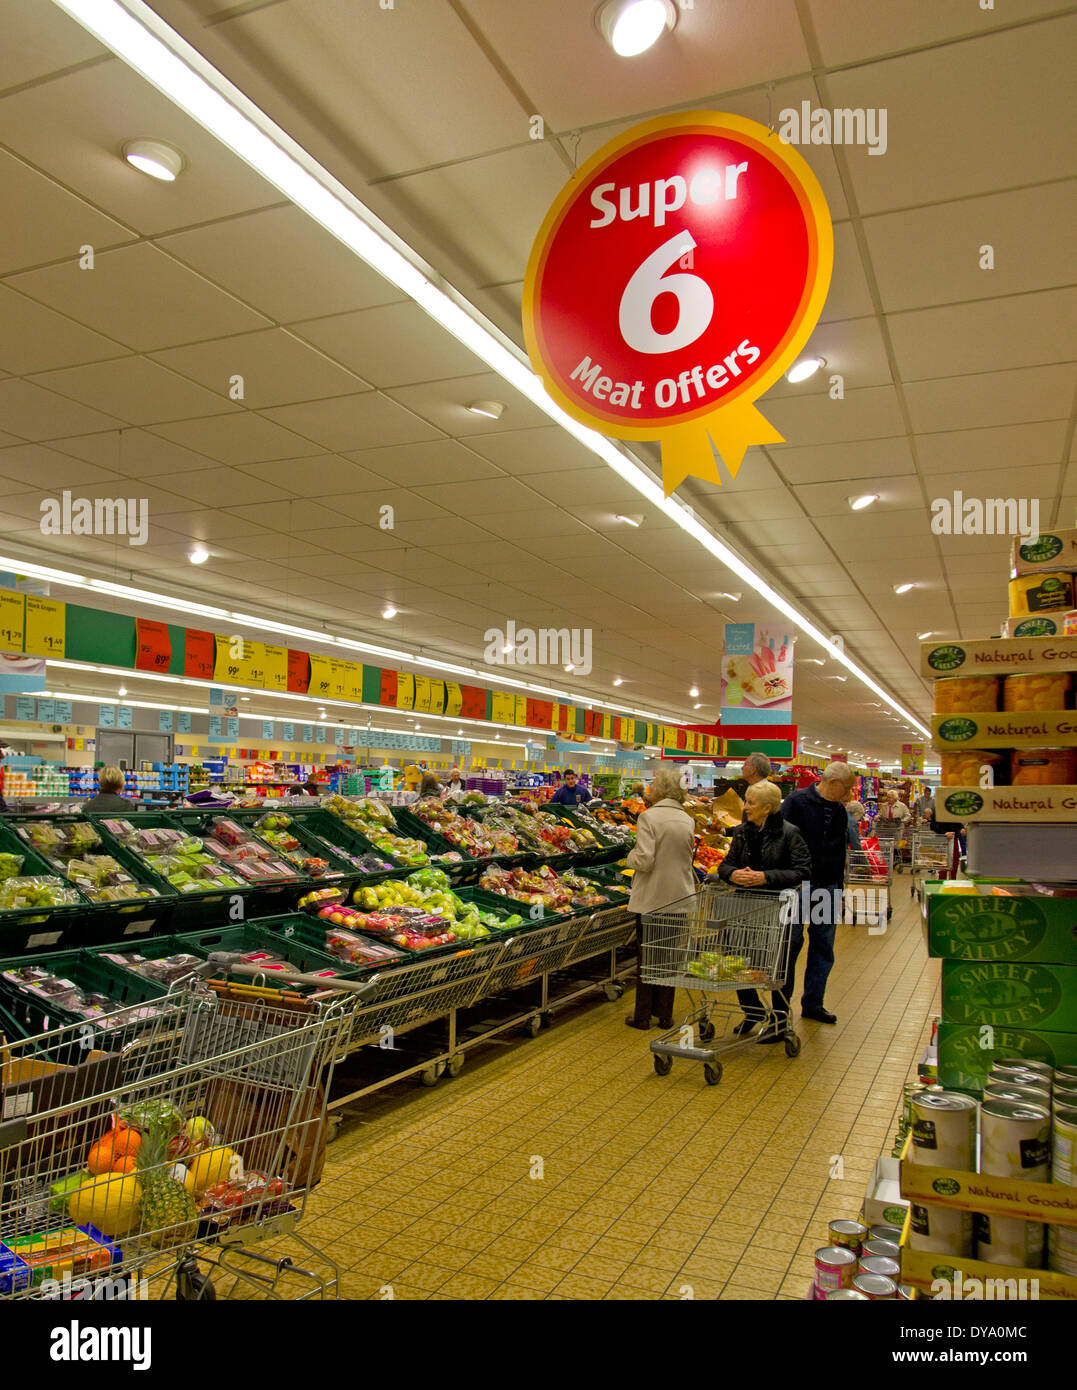 Visualización de las verduras frescas y las ofertas de descuento Aldi supemarket Foto de stock